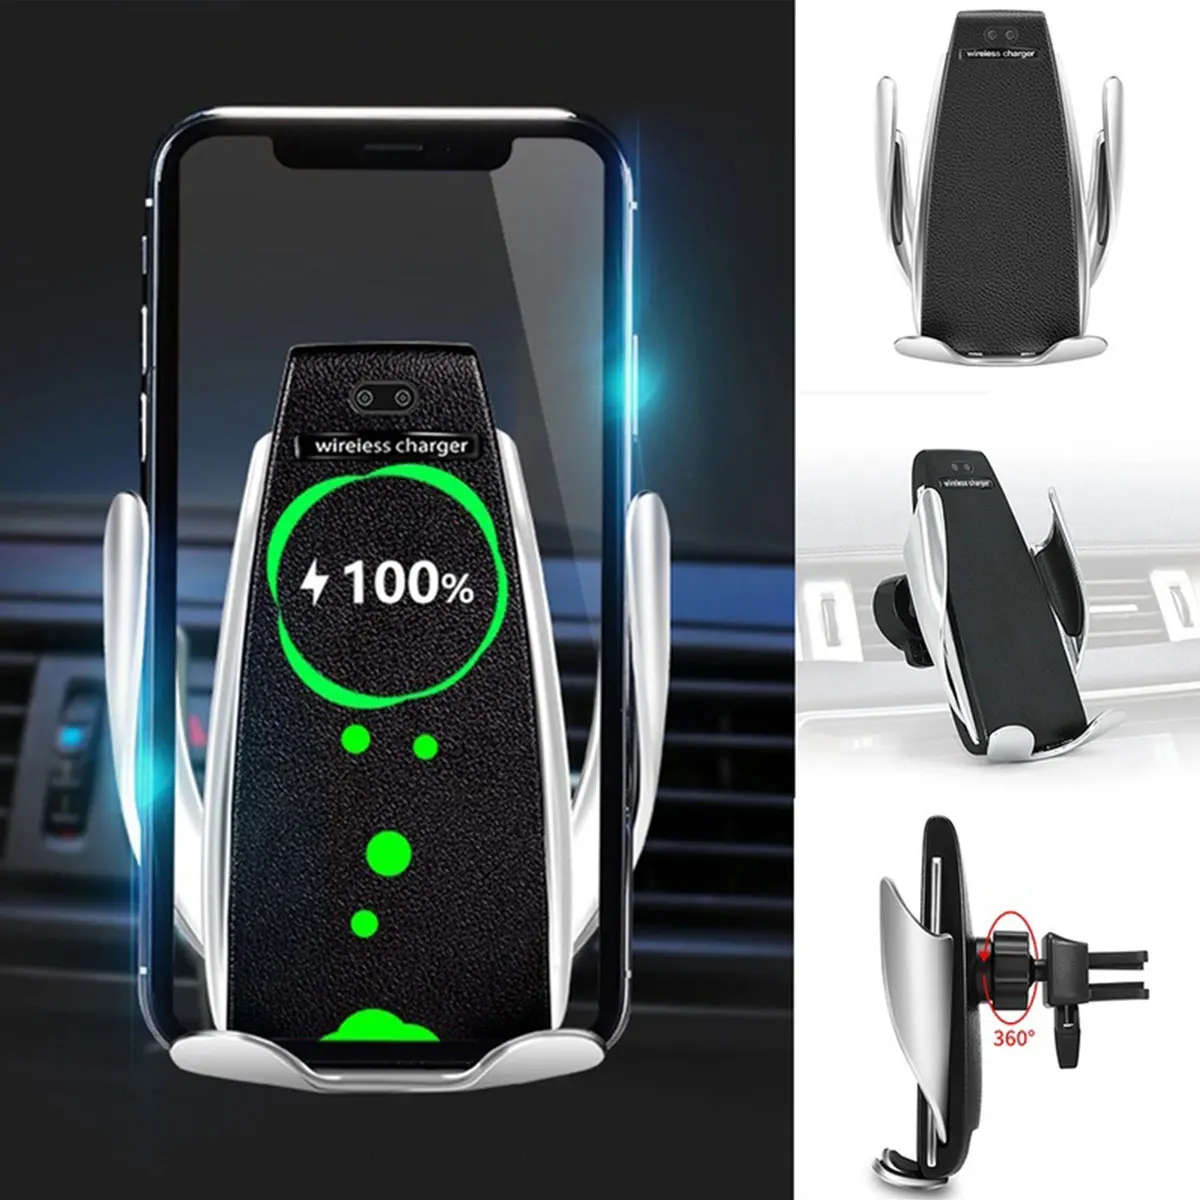 ИК Интеллектуальный автоматический зажимной сенсор держатель для телефона Автомобильный держатель для телефона на вентиляционное отверстие GPS подставка Беспроводная зарядка для iphone Samsung